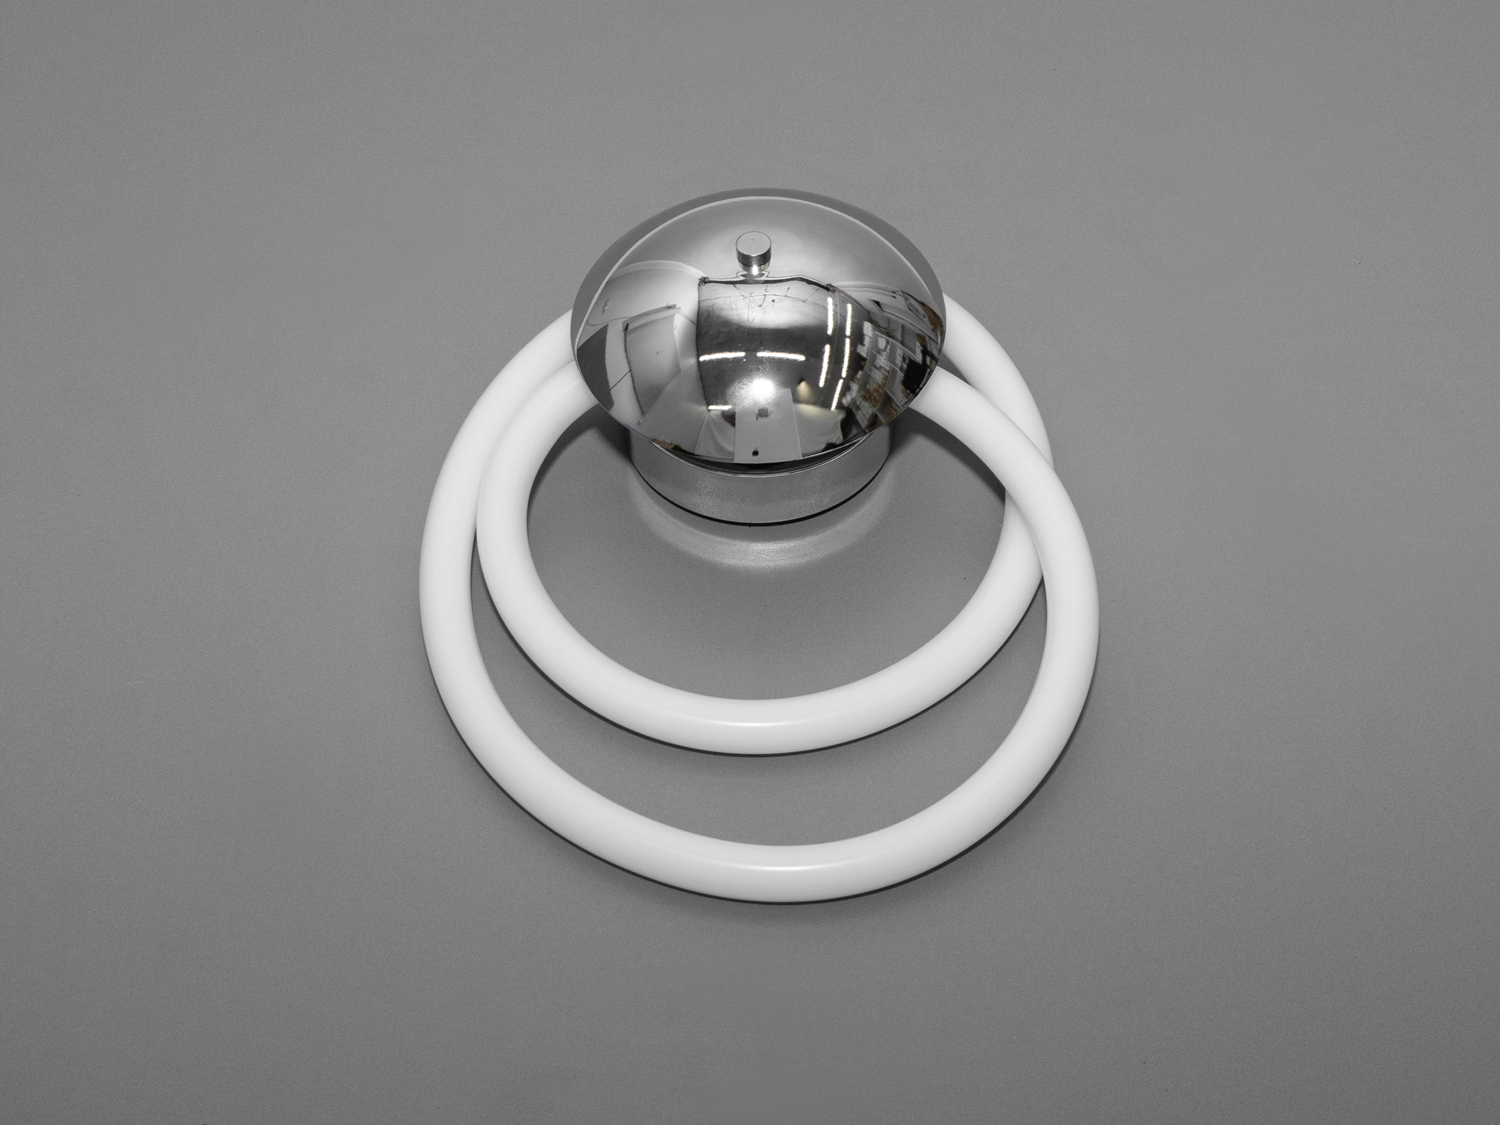 Срібний світлодіодний світильник шланг на 5 W є справжнім втіленням унікальності та інноваційності в освітлювальних приладах. Лед світильник Шланг поєднує в собі елегантність і практичність, додаючи в інтер'єр особливу атмосферу. Відразу кидається в очі оригінальна конструкція світильника, що складається з двох концентричних світлових кіл, які обрамляють центральну сферичну частину з дзеркальним покриттям, відбиваючи і розсіюючи світло в просторі, створюючи теплу і затишну атмосферу.
Світлодіодна технологія, використана в цьому силіконовому шлангу, гарантує довгий термін служби приладу, а також забезпечує безпечність для очей завдяки рівномірному та м'якому світлу без мерехтіння. Колірна температура 3200К створює приємне світло, яке ідеально підходить для створення розслабленої обстановки в спальні або для концентрації уваги в кабінеті.
Гнучкість силіконового шланга надає додаткову вигоду, дозволяючи користувачеві змінювати форму світильника залежно від потреби, що робить його ідеальним вибором для тих, хто хоче додати особистий характер своєму житловому простору. Це також чудове доповнення до основної люстри шланг у великих кімнатах, де потрібне декоративне підсвічування або акцентування уваги на певних деталях інтер'єру.
LEd світильник можна встановити в коридорі як бра, де він буде не тільки виконувати практичну функцію освітлення, але й слугуватиме вишуканим декоративним елементом. Завдяки своїй простоті та витонченості, цей світильник-бра легко впишеться в багато сучасних стилів інтер'єру та ефективно їх доповнить, привносячи світло та тепло в будь-яку кімнату.
Поєднуючи в собі доступну ціну з високою якістю та стильним дизайном, цей світильник є чудовим вибором для тих, хто хоче оновити своє освітлення без зайвих витрат.